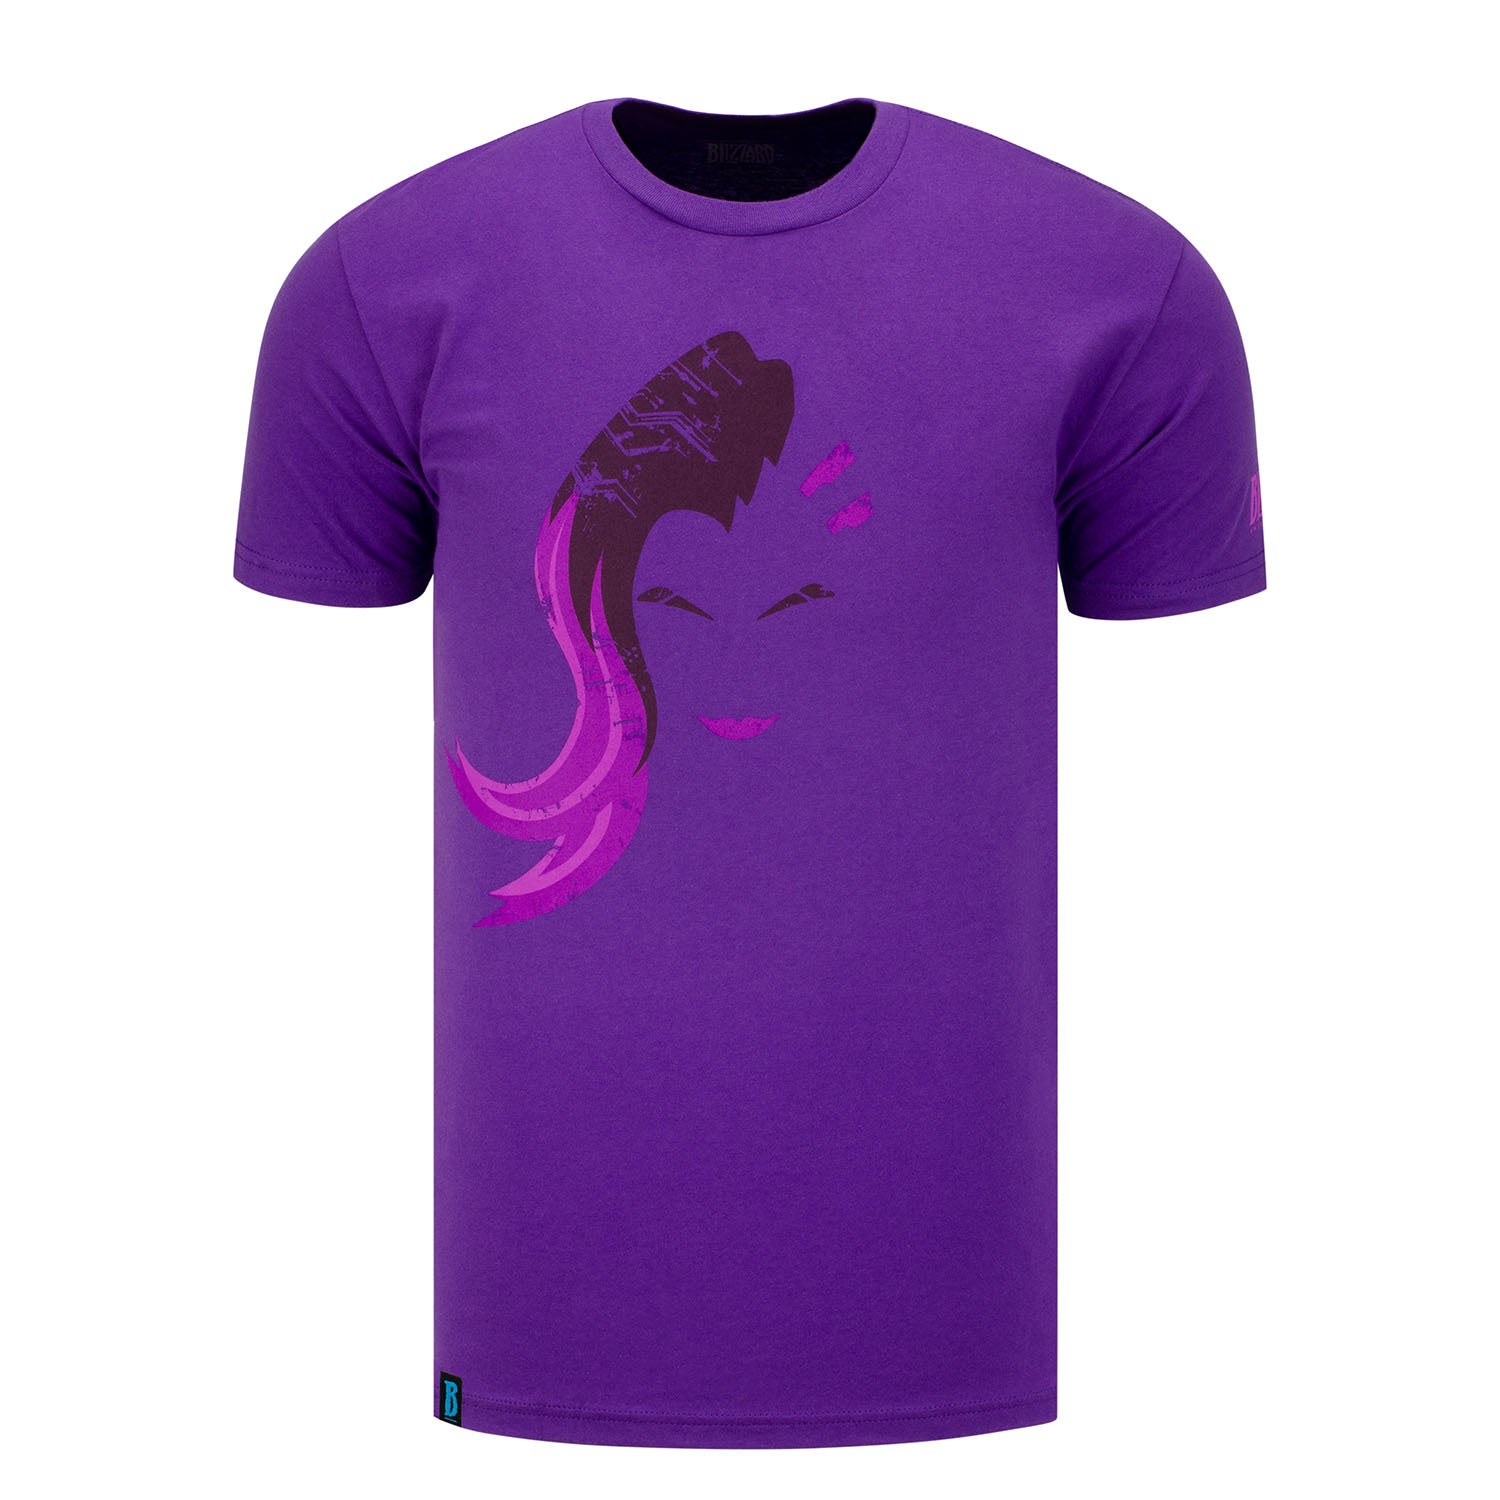 Overwatch Sombra Hero Purple T-Shirt - Front View